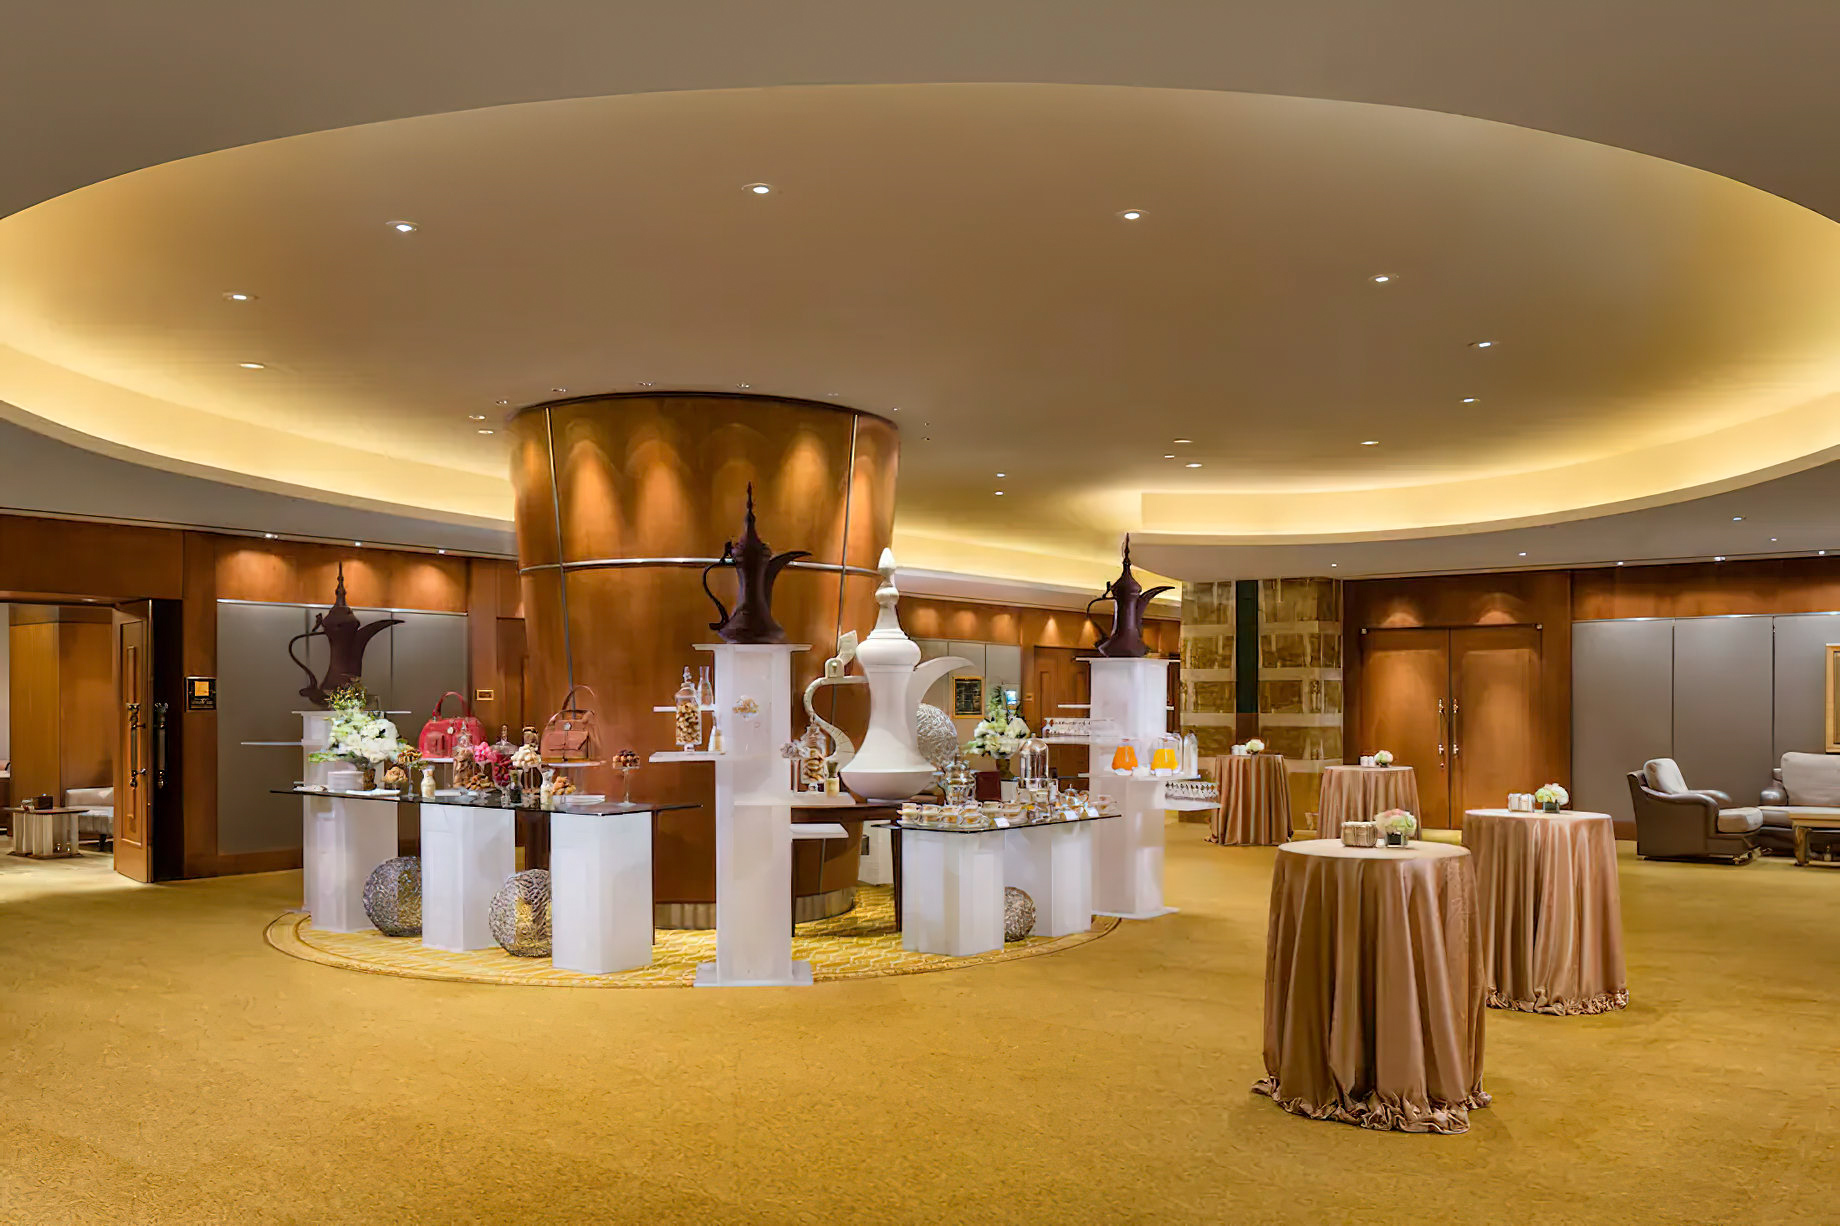 Emirates Palace Abu Dhabi Hotel – Abu Dhabi, UAE – Conference Center Foyer